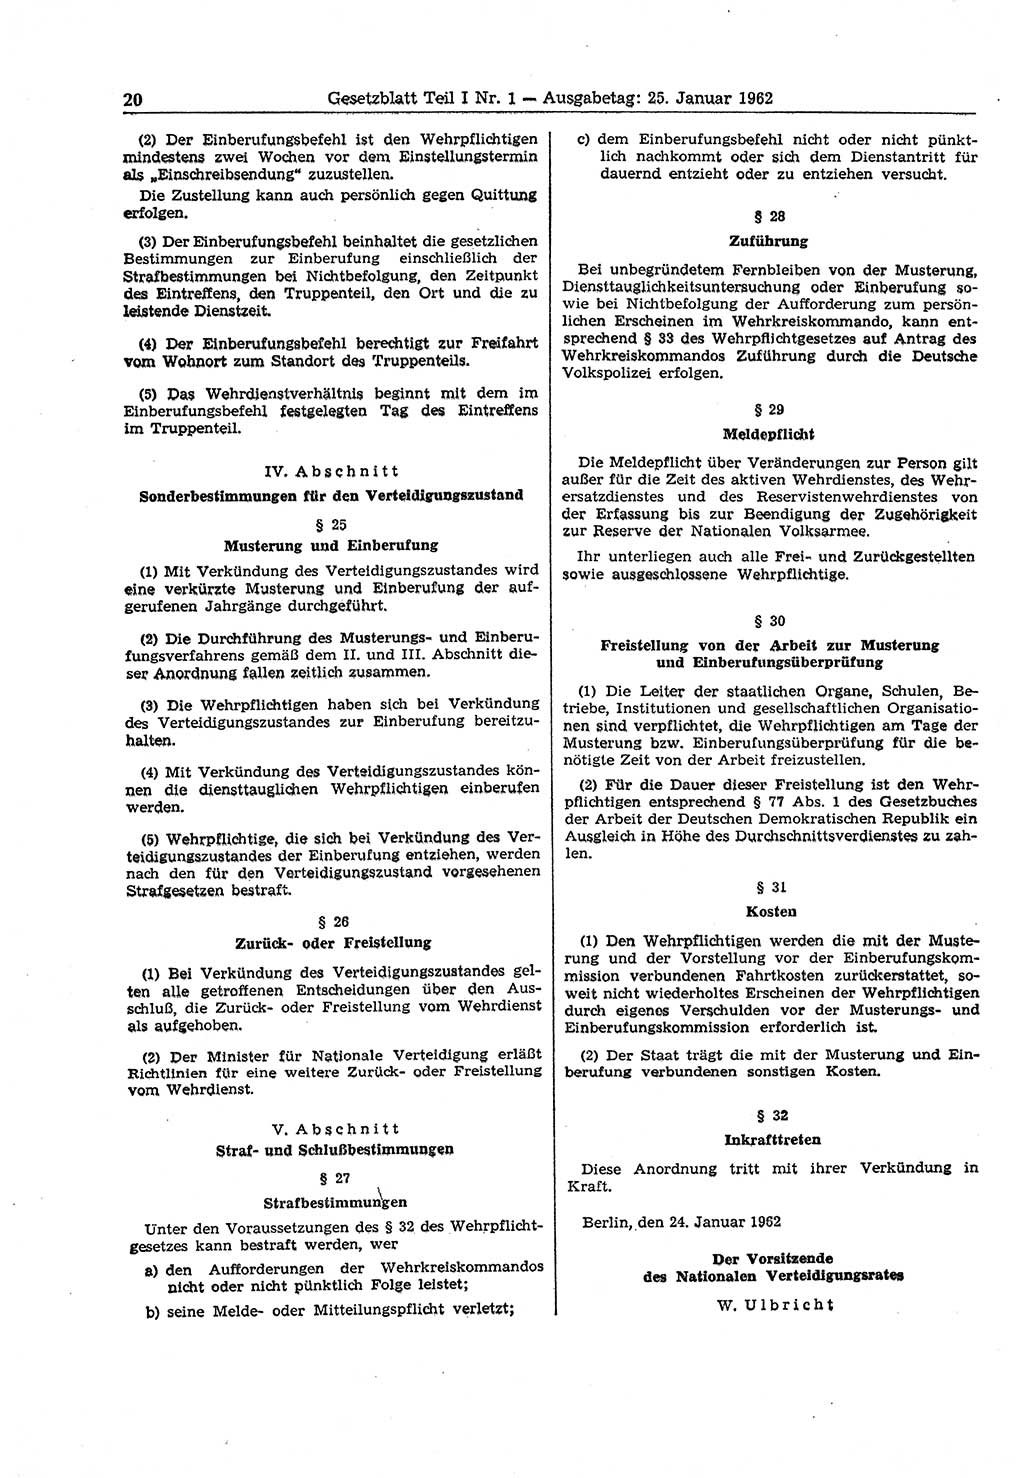 Gesetzblatt (GBl.) der Deutschen Demokratischen Republik (DDR) Teil Ⅰ 1962, Seite 20 (GBl. DDR Ⅰ 1962, S. 20)